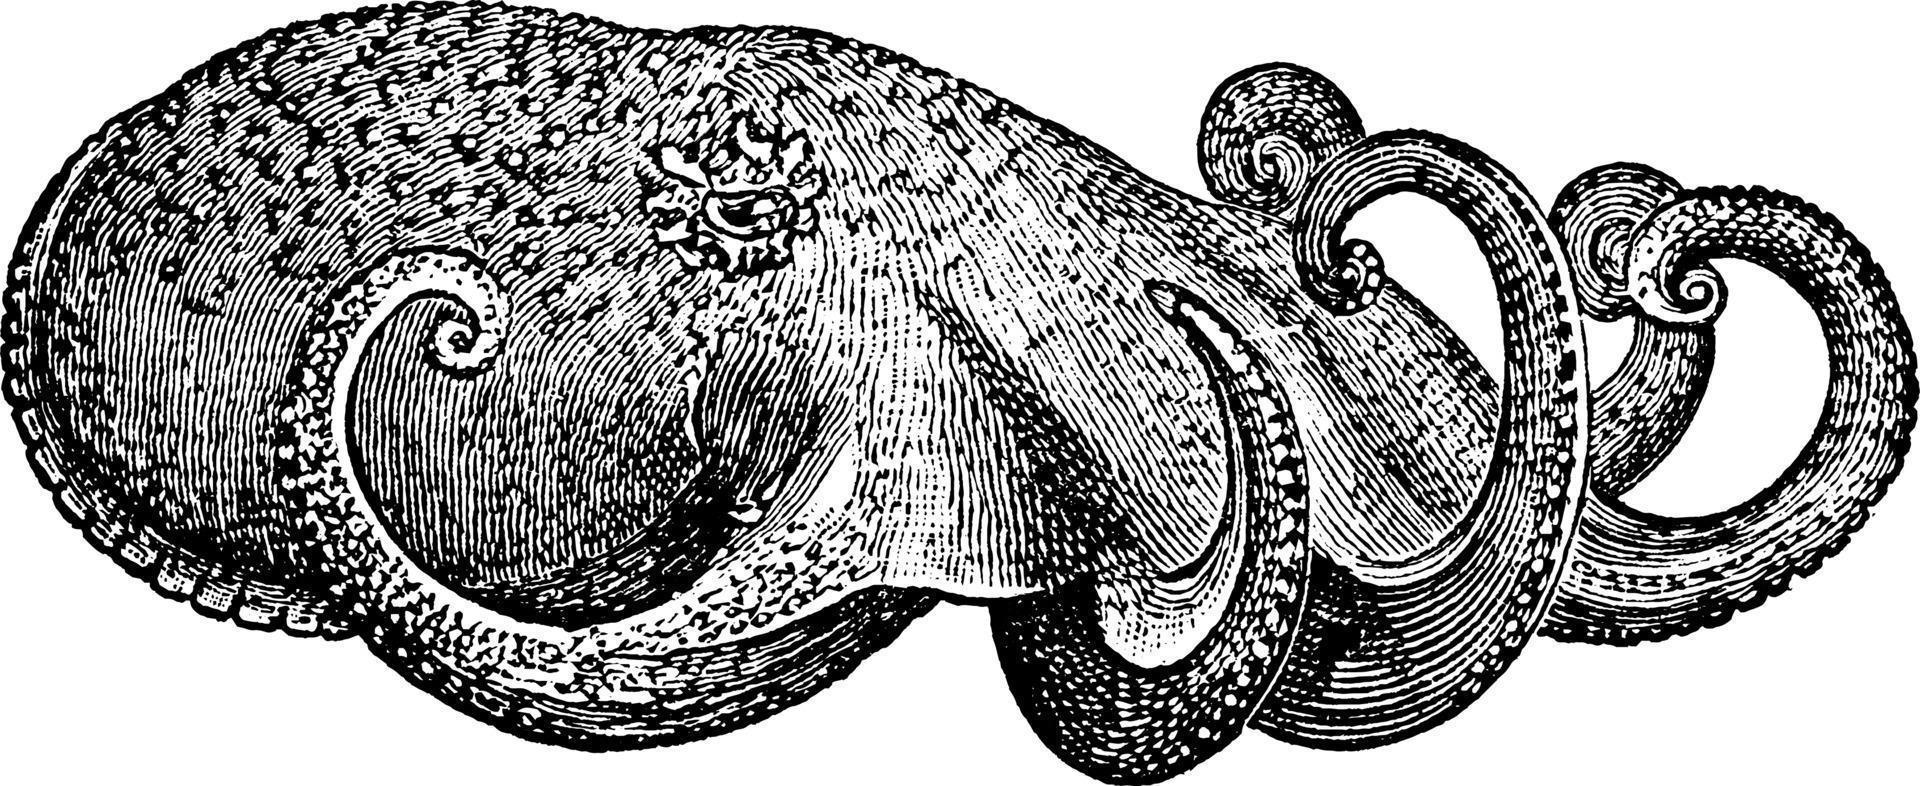 poulpe, illustration vintage. vecteur